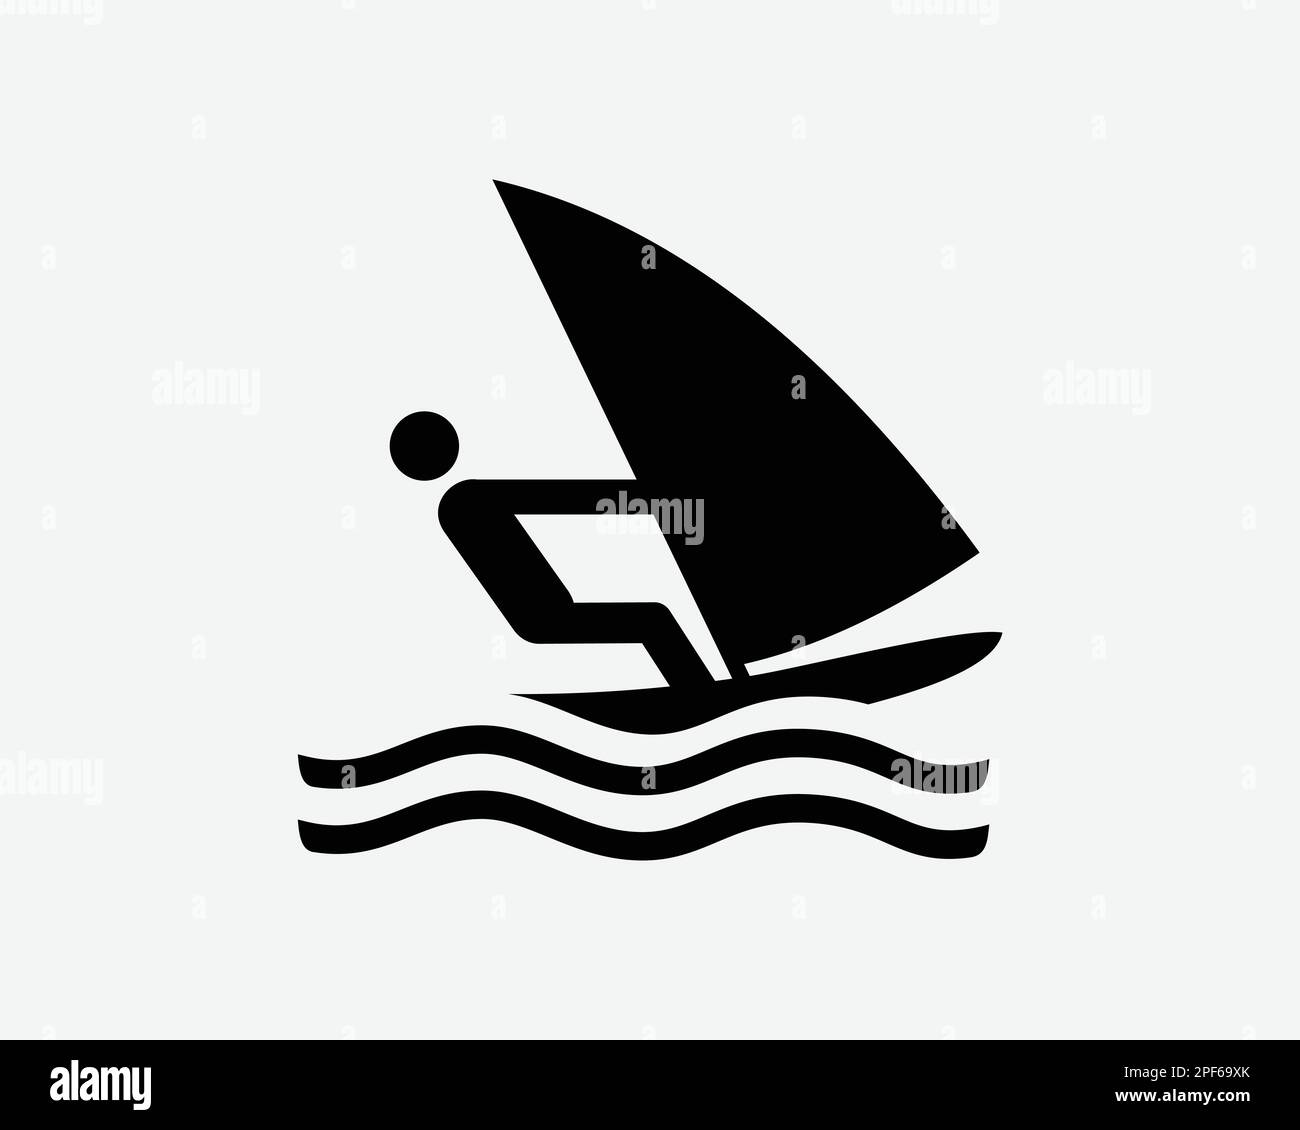 Icona Windsurf Wind Surf Sport Sport Race Racing Activity Vector Black White Silhouette simbolo segno grafico clipart Illustrazione pittogramma Illustrazione Vettoriale